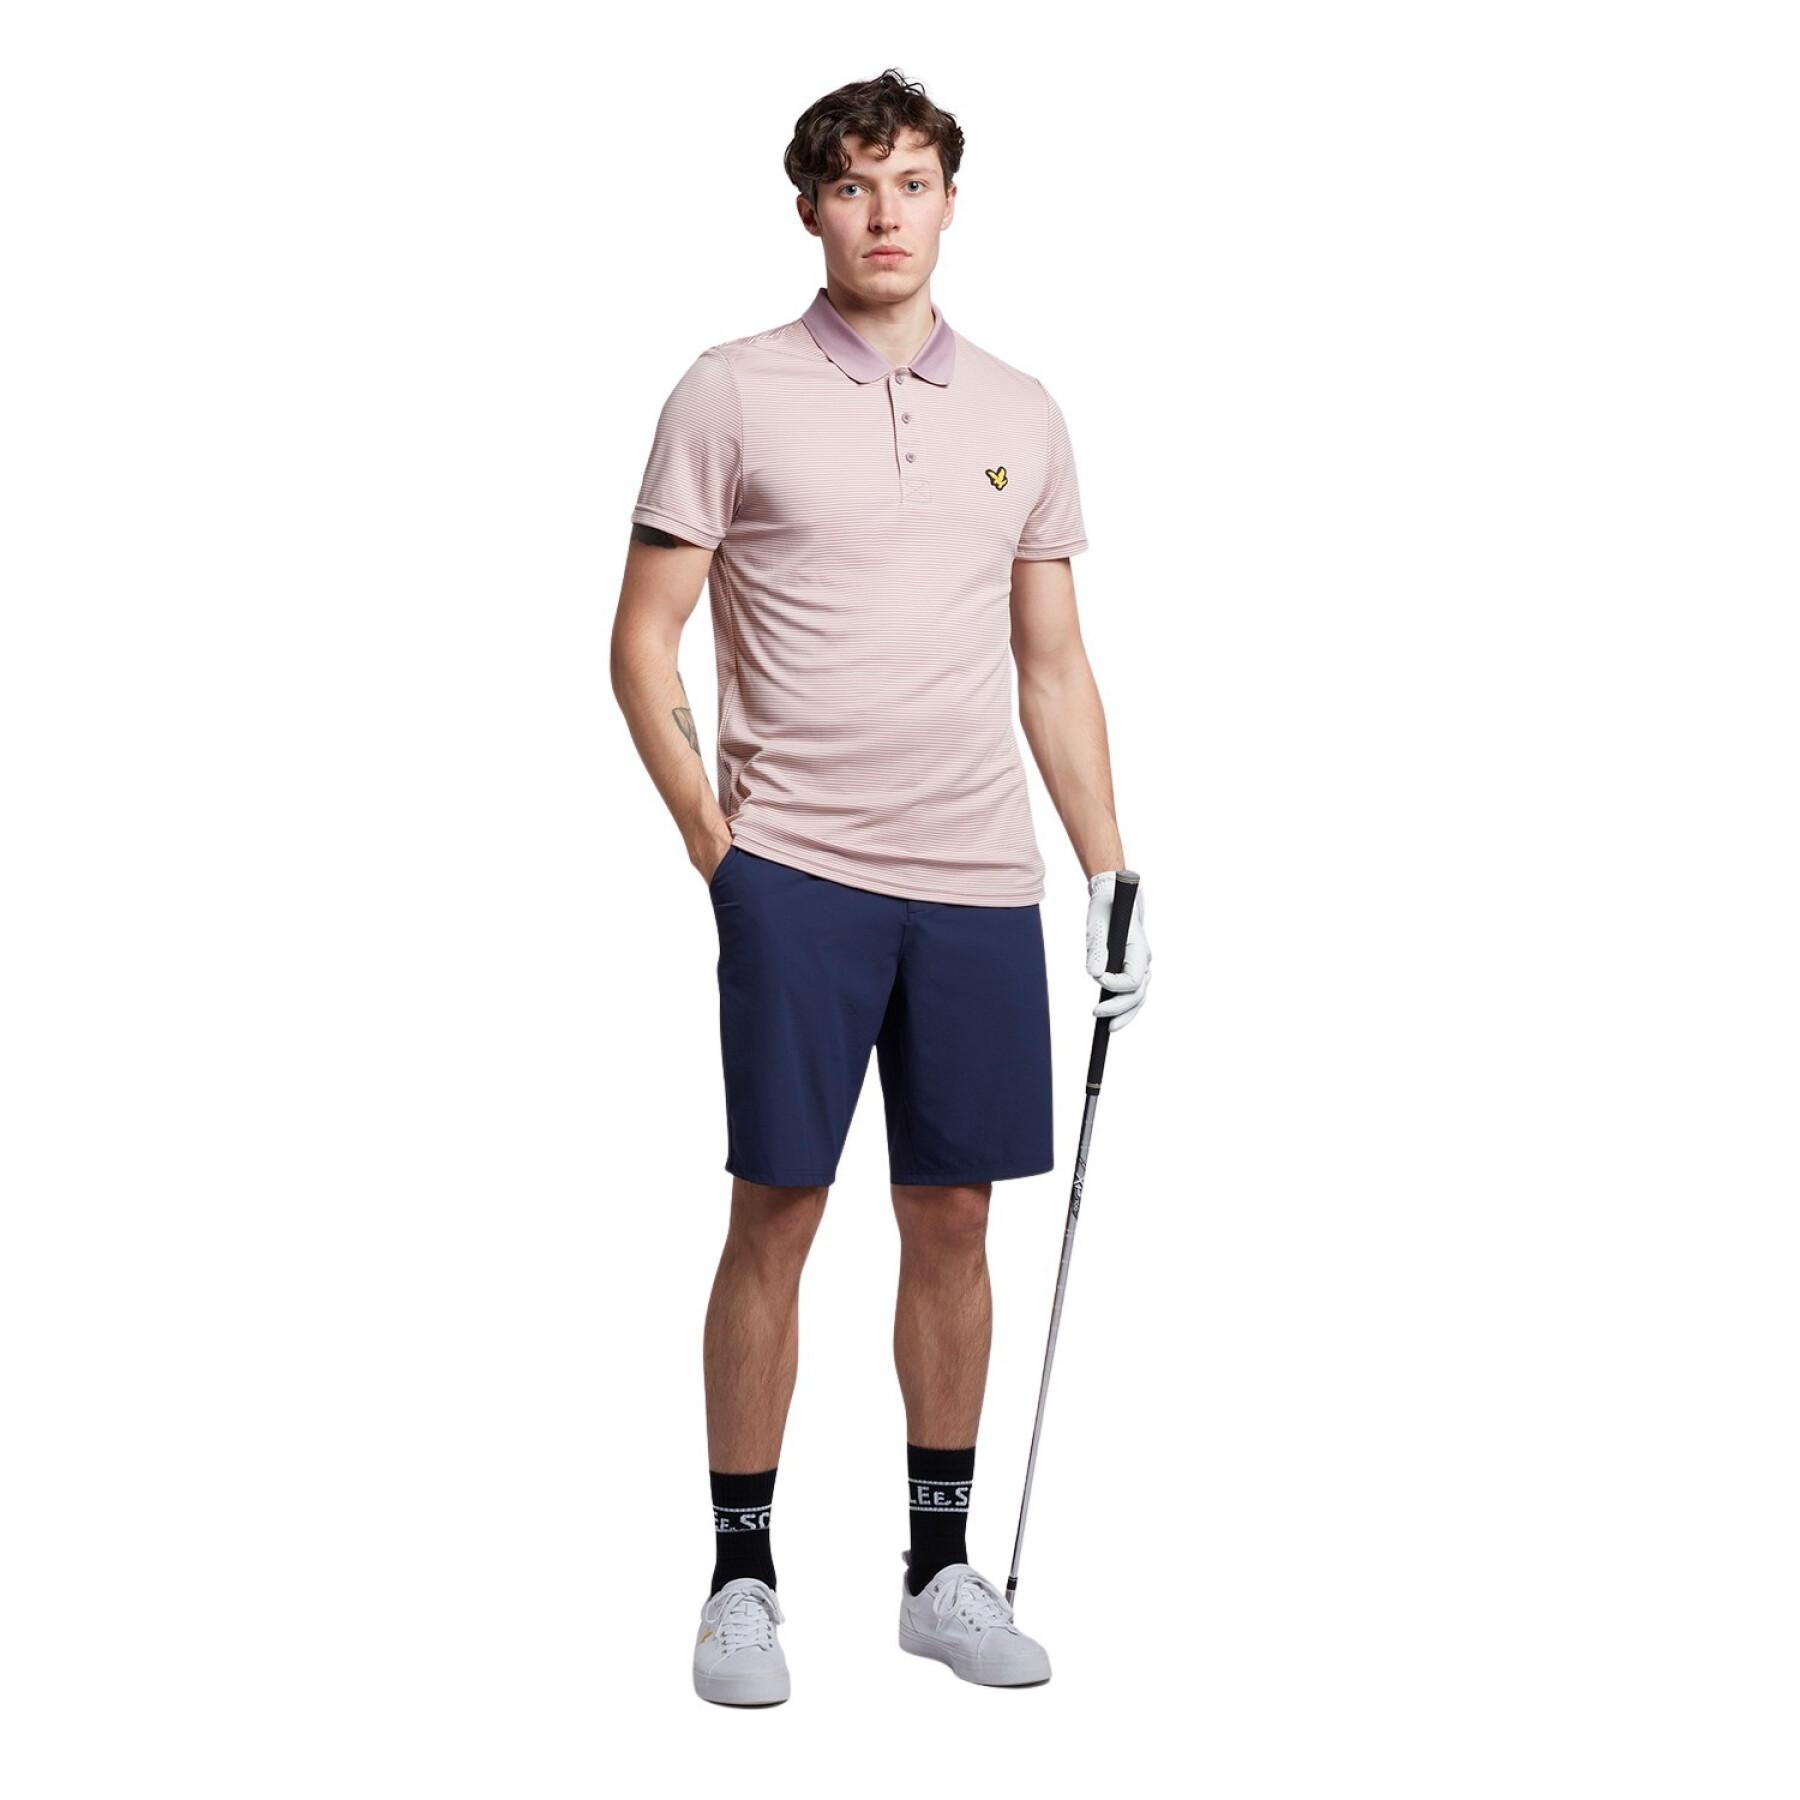 Polo-Shirt Lyle & Scott Golf Microstripe